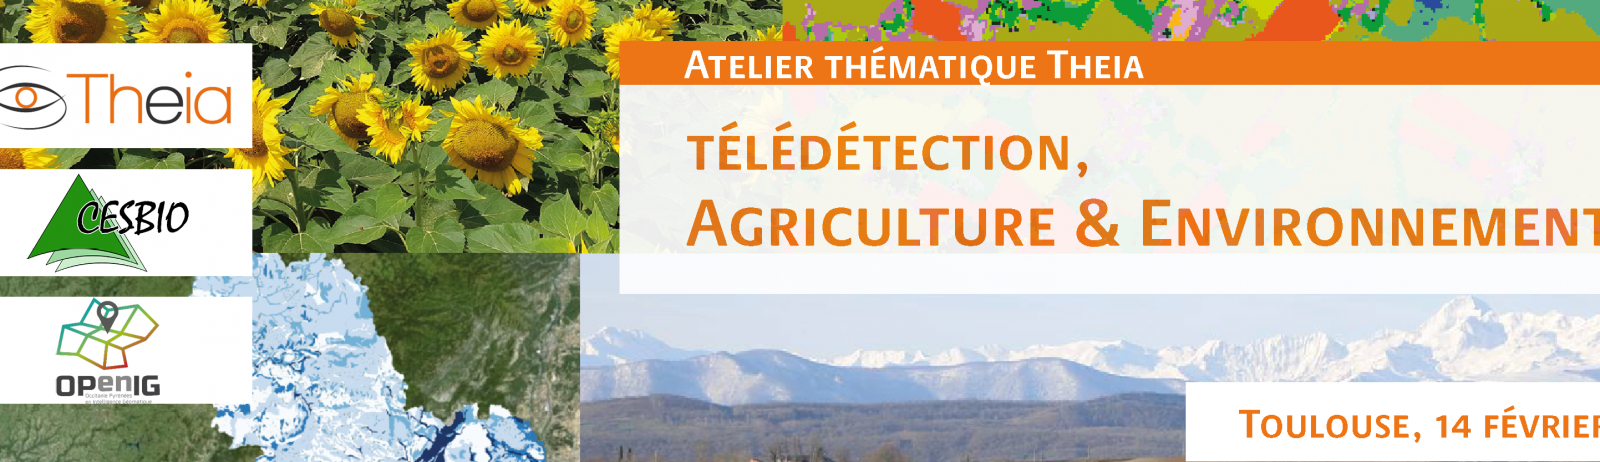 Atelier thématique | Télédétection, agriculture et environnement